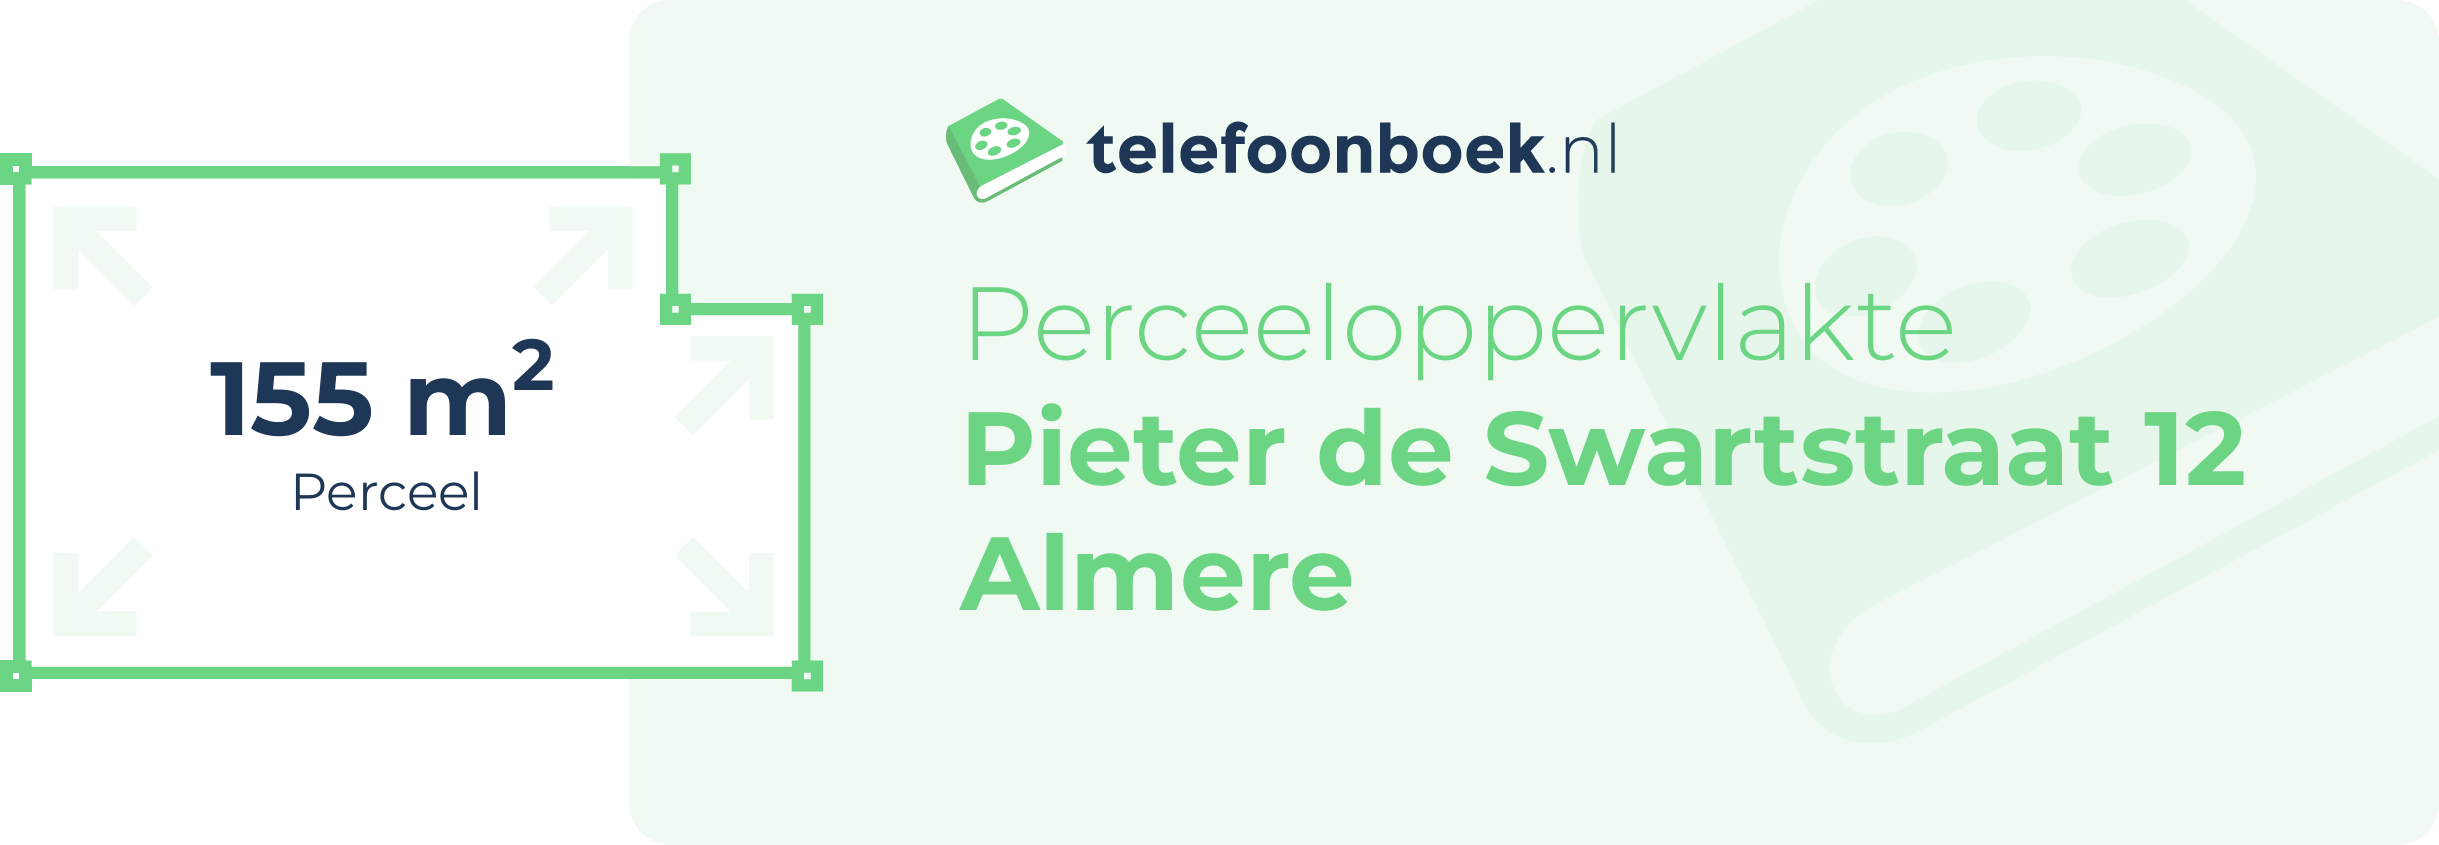 Perceeloppervlakte Pieter De Swartstraat 12 Almere